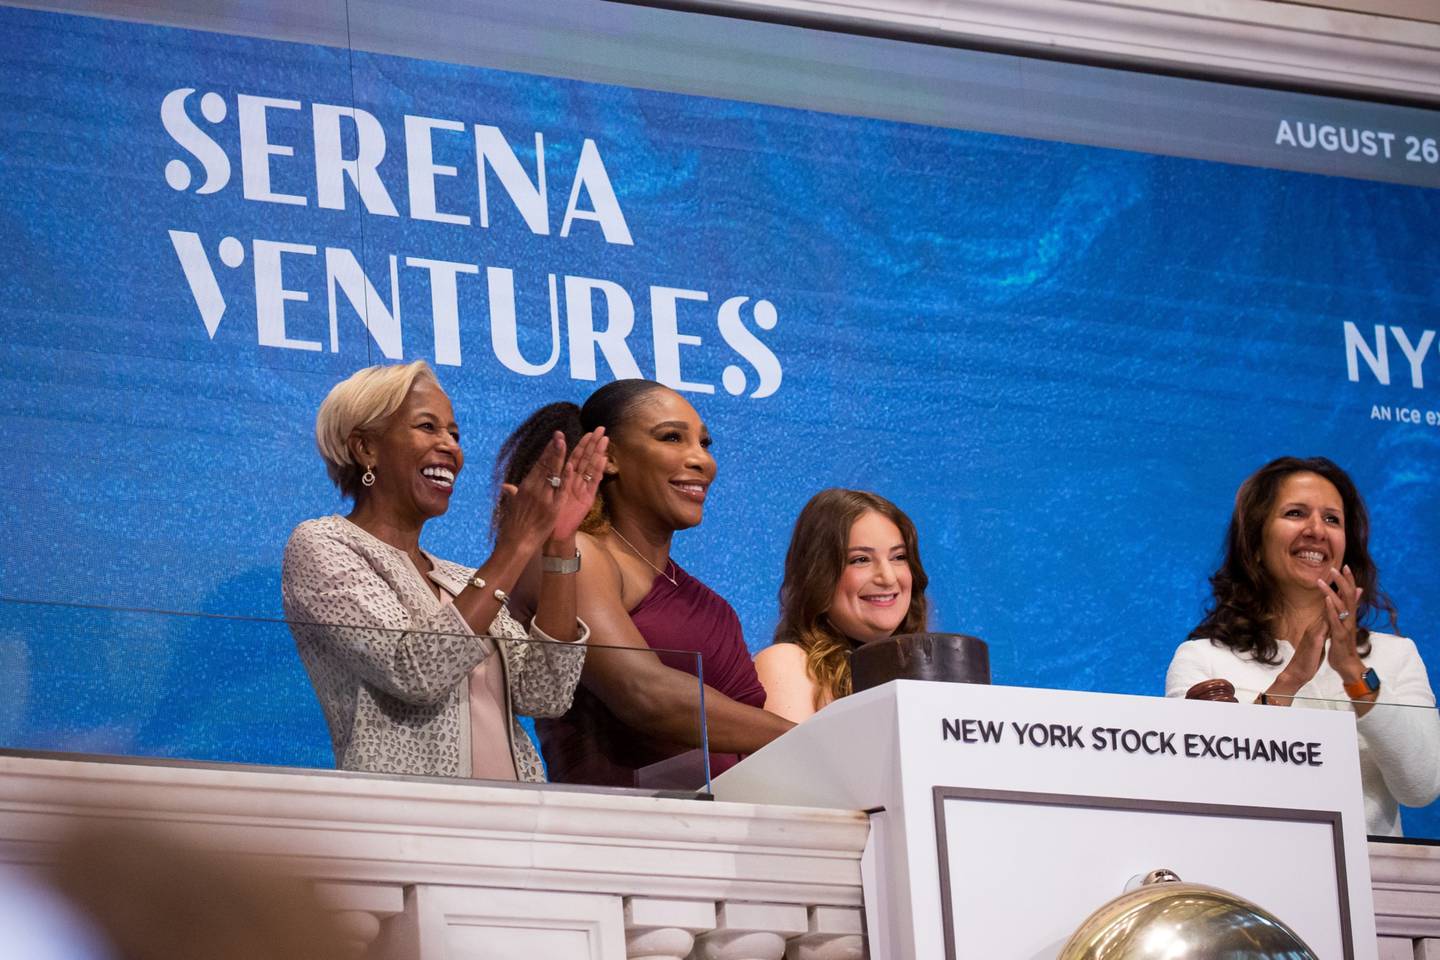 Sharon Bowen, presidenta de la Bolsa de Valores de Nueva York (NYSE), de izquierda a derecha, Serena Williams, tenista profesional y fundadora de Serena Ventures LLC, Alison Rapaport, socia gerente de Serena Ventures LLC, Lynn Martin, presidenta de la Bolsa de Valores de Nueva York (NYSE), durante el toque de la campana de apertura en el piso de la NYSE en Nueva York, Estados Unidos, el viernes 26 de agosto de 2022.